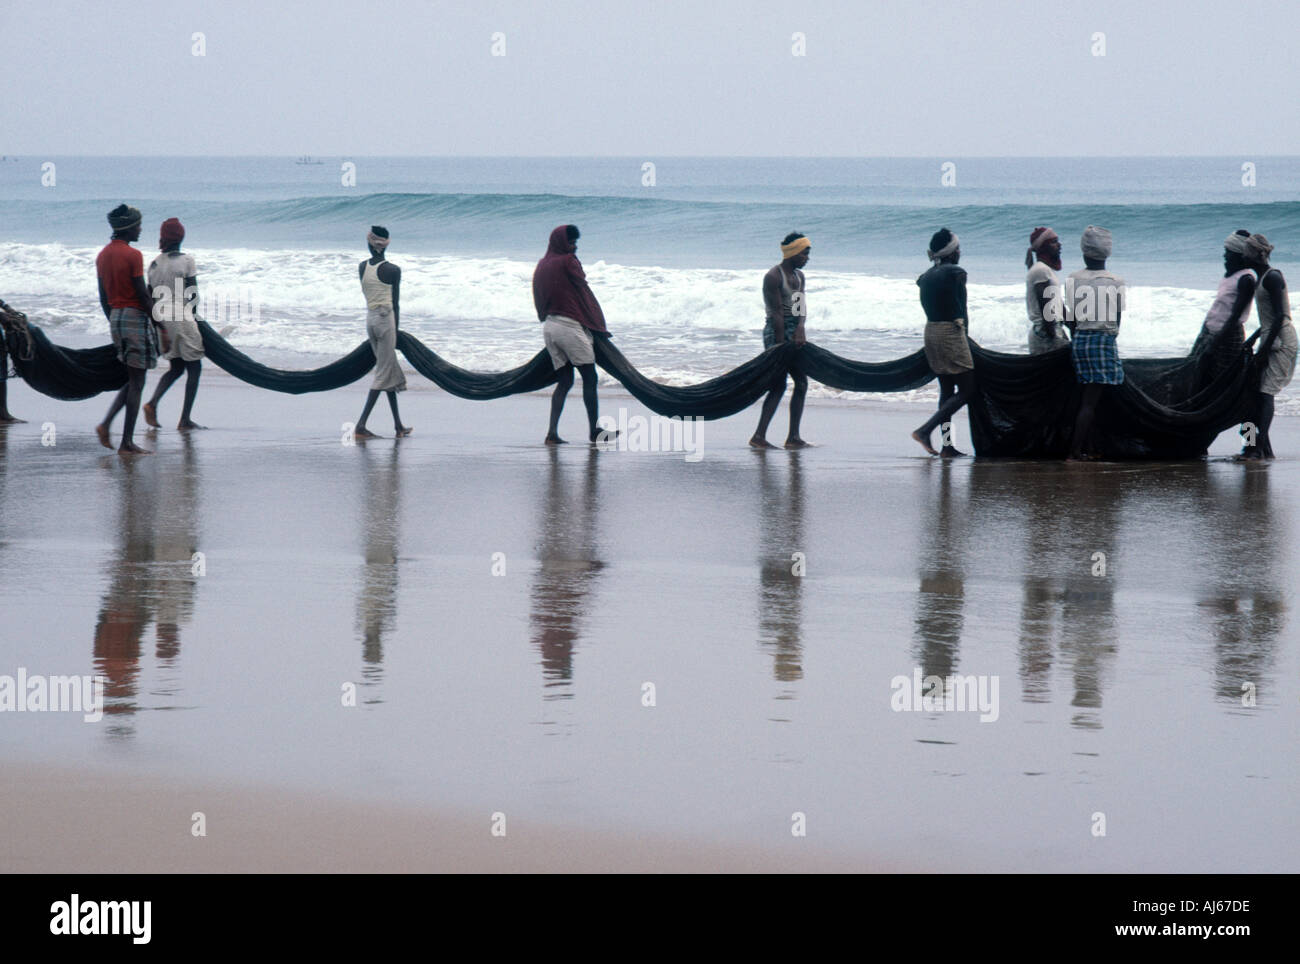 Caricamento dei pescatori le reti sulla loro barca sulla spiaggia all'alba Foto Stock